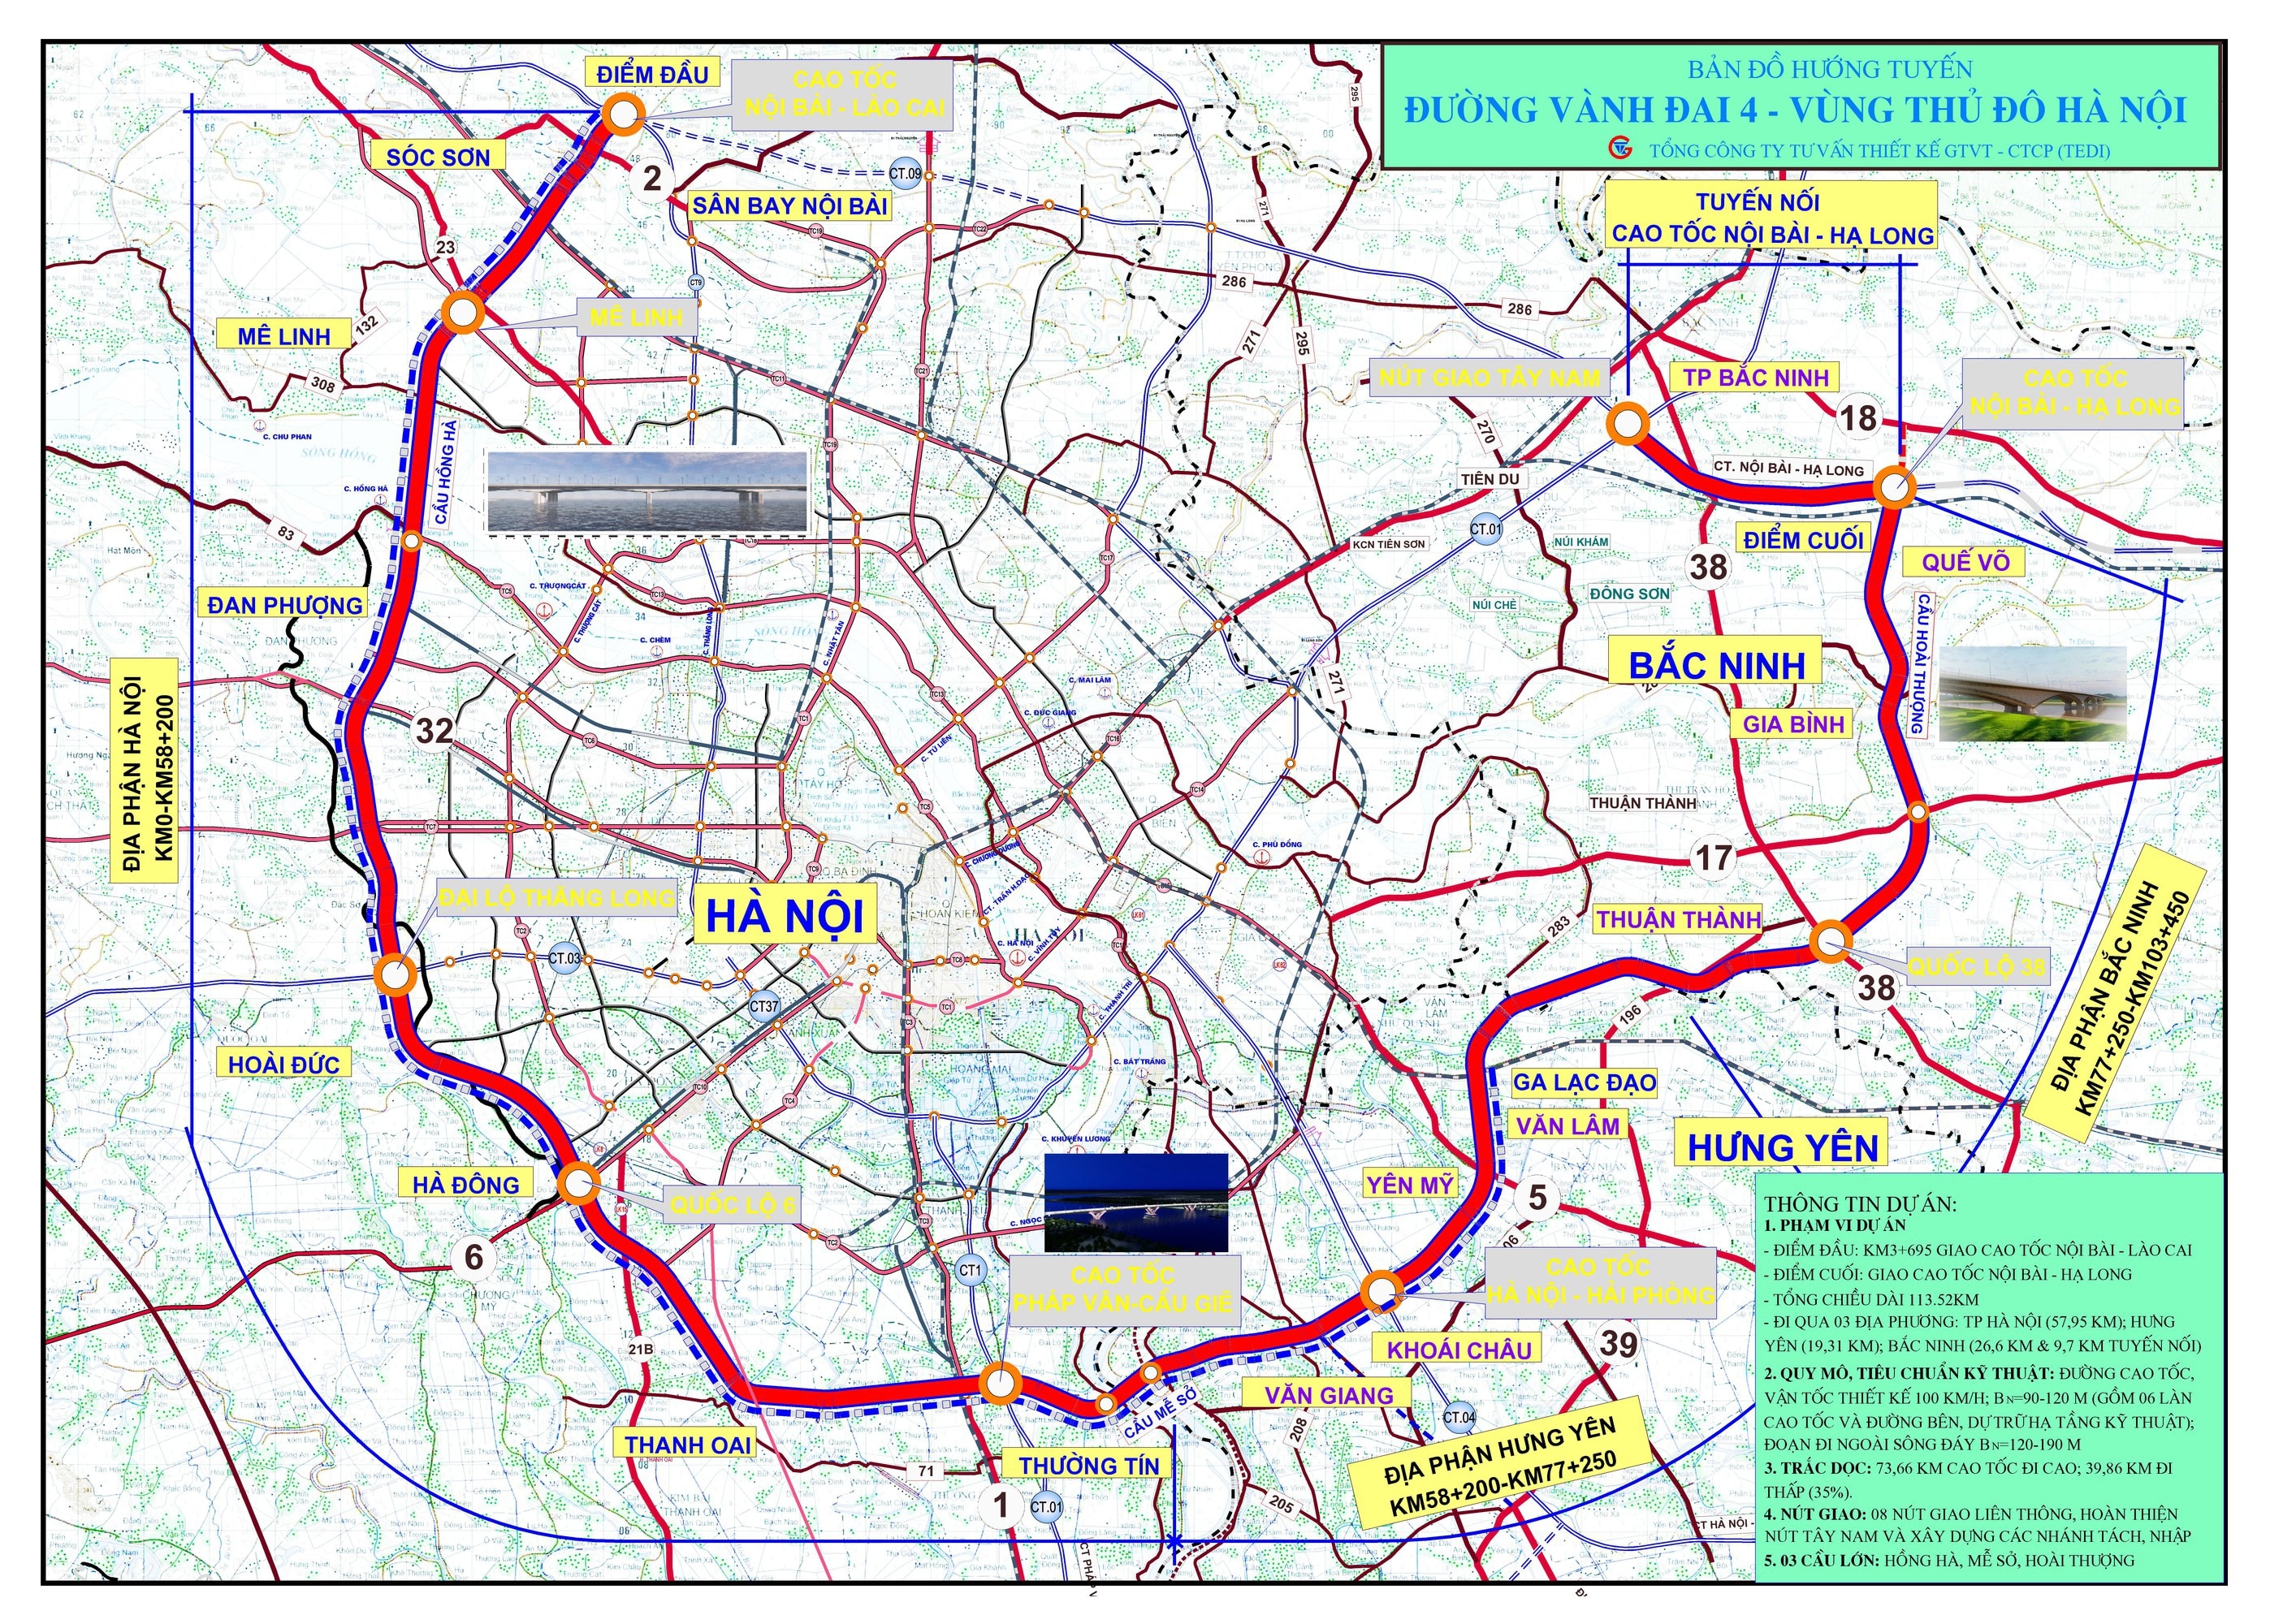 Pune Ring Road | पीएमआरडीएच्या रिंगरोडसाठी ४५ कि.मी. भूसंपादनाच्या भागाचे  सर्वेक्षण पूर्ण | 45 km for ring road of PMRDA. Completed survey of land  acquisition area